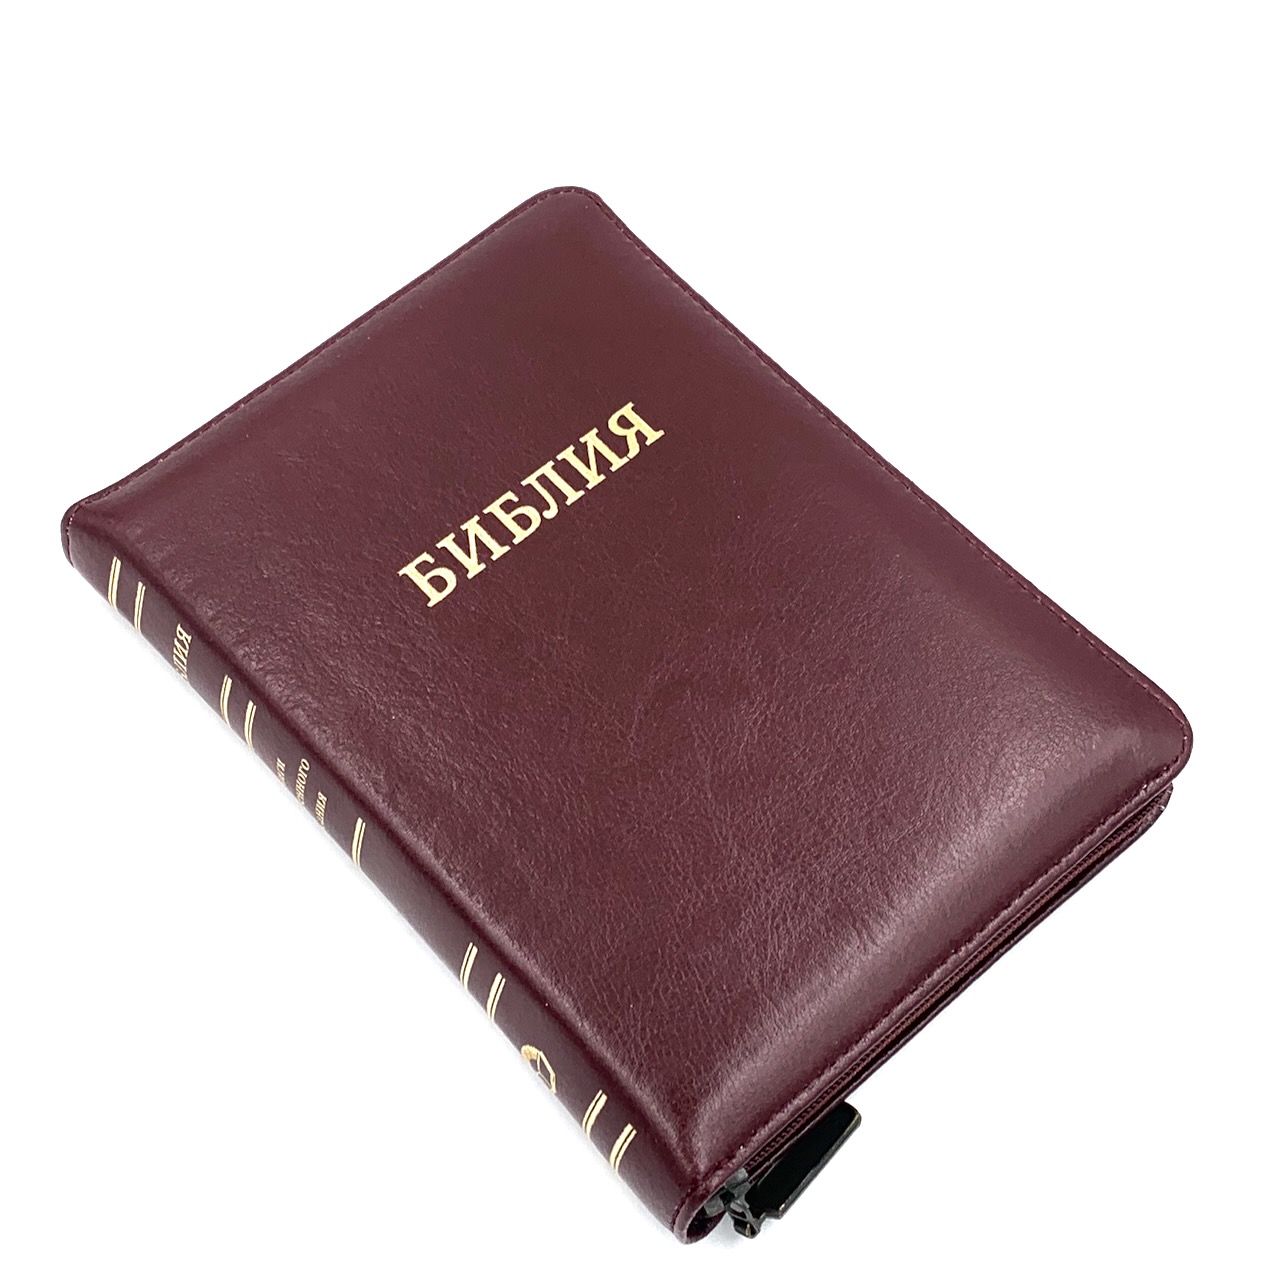 Библия 047zti формат, кожаный переплет на молнии с индексами, цвет коричневый с оттенком бордо,   золотой обрез, кремовые страницы,  средний формат, 135*185 мм, шрифт 10-11 кегель